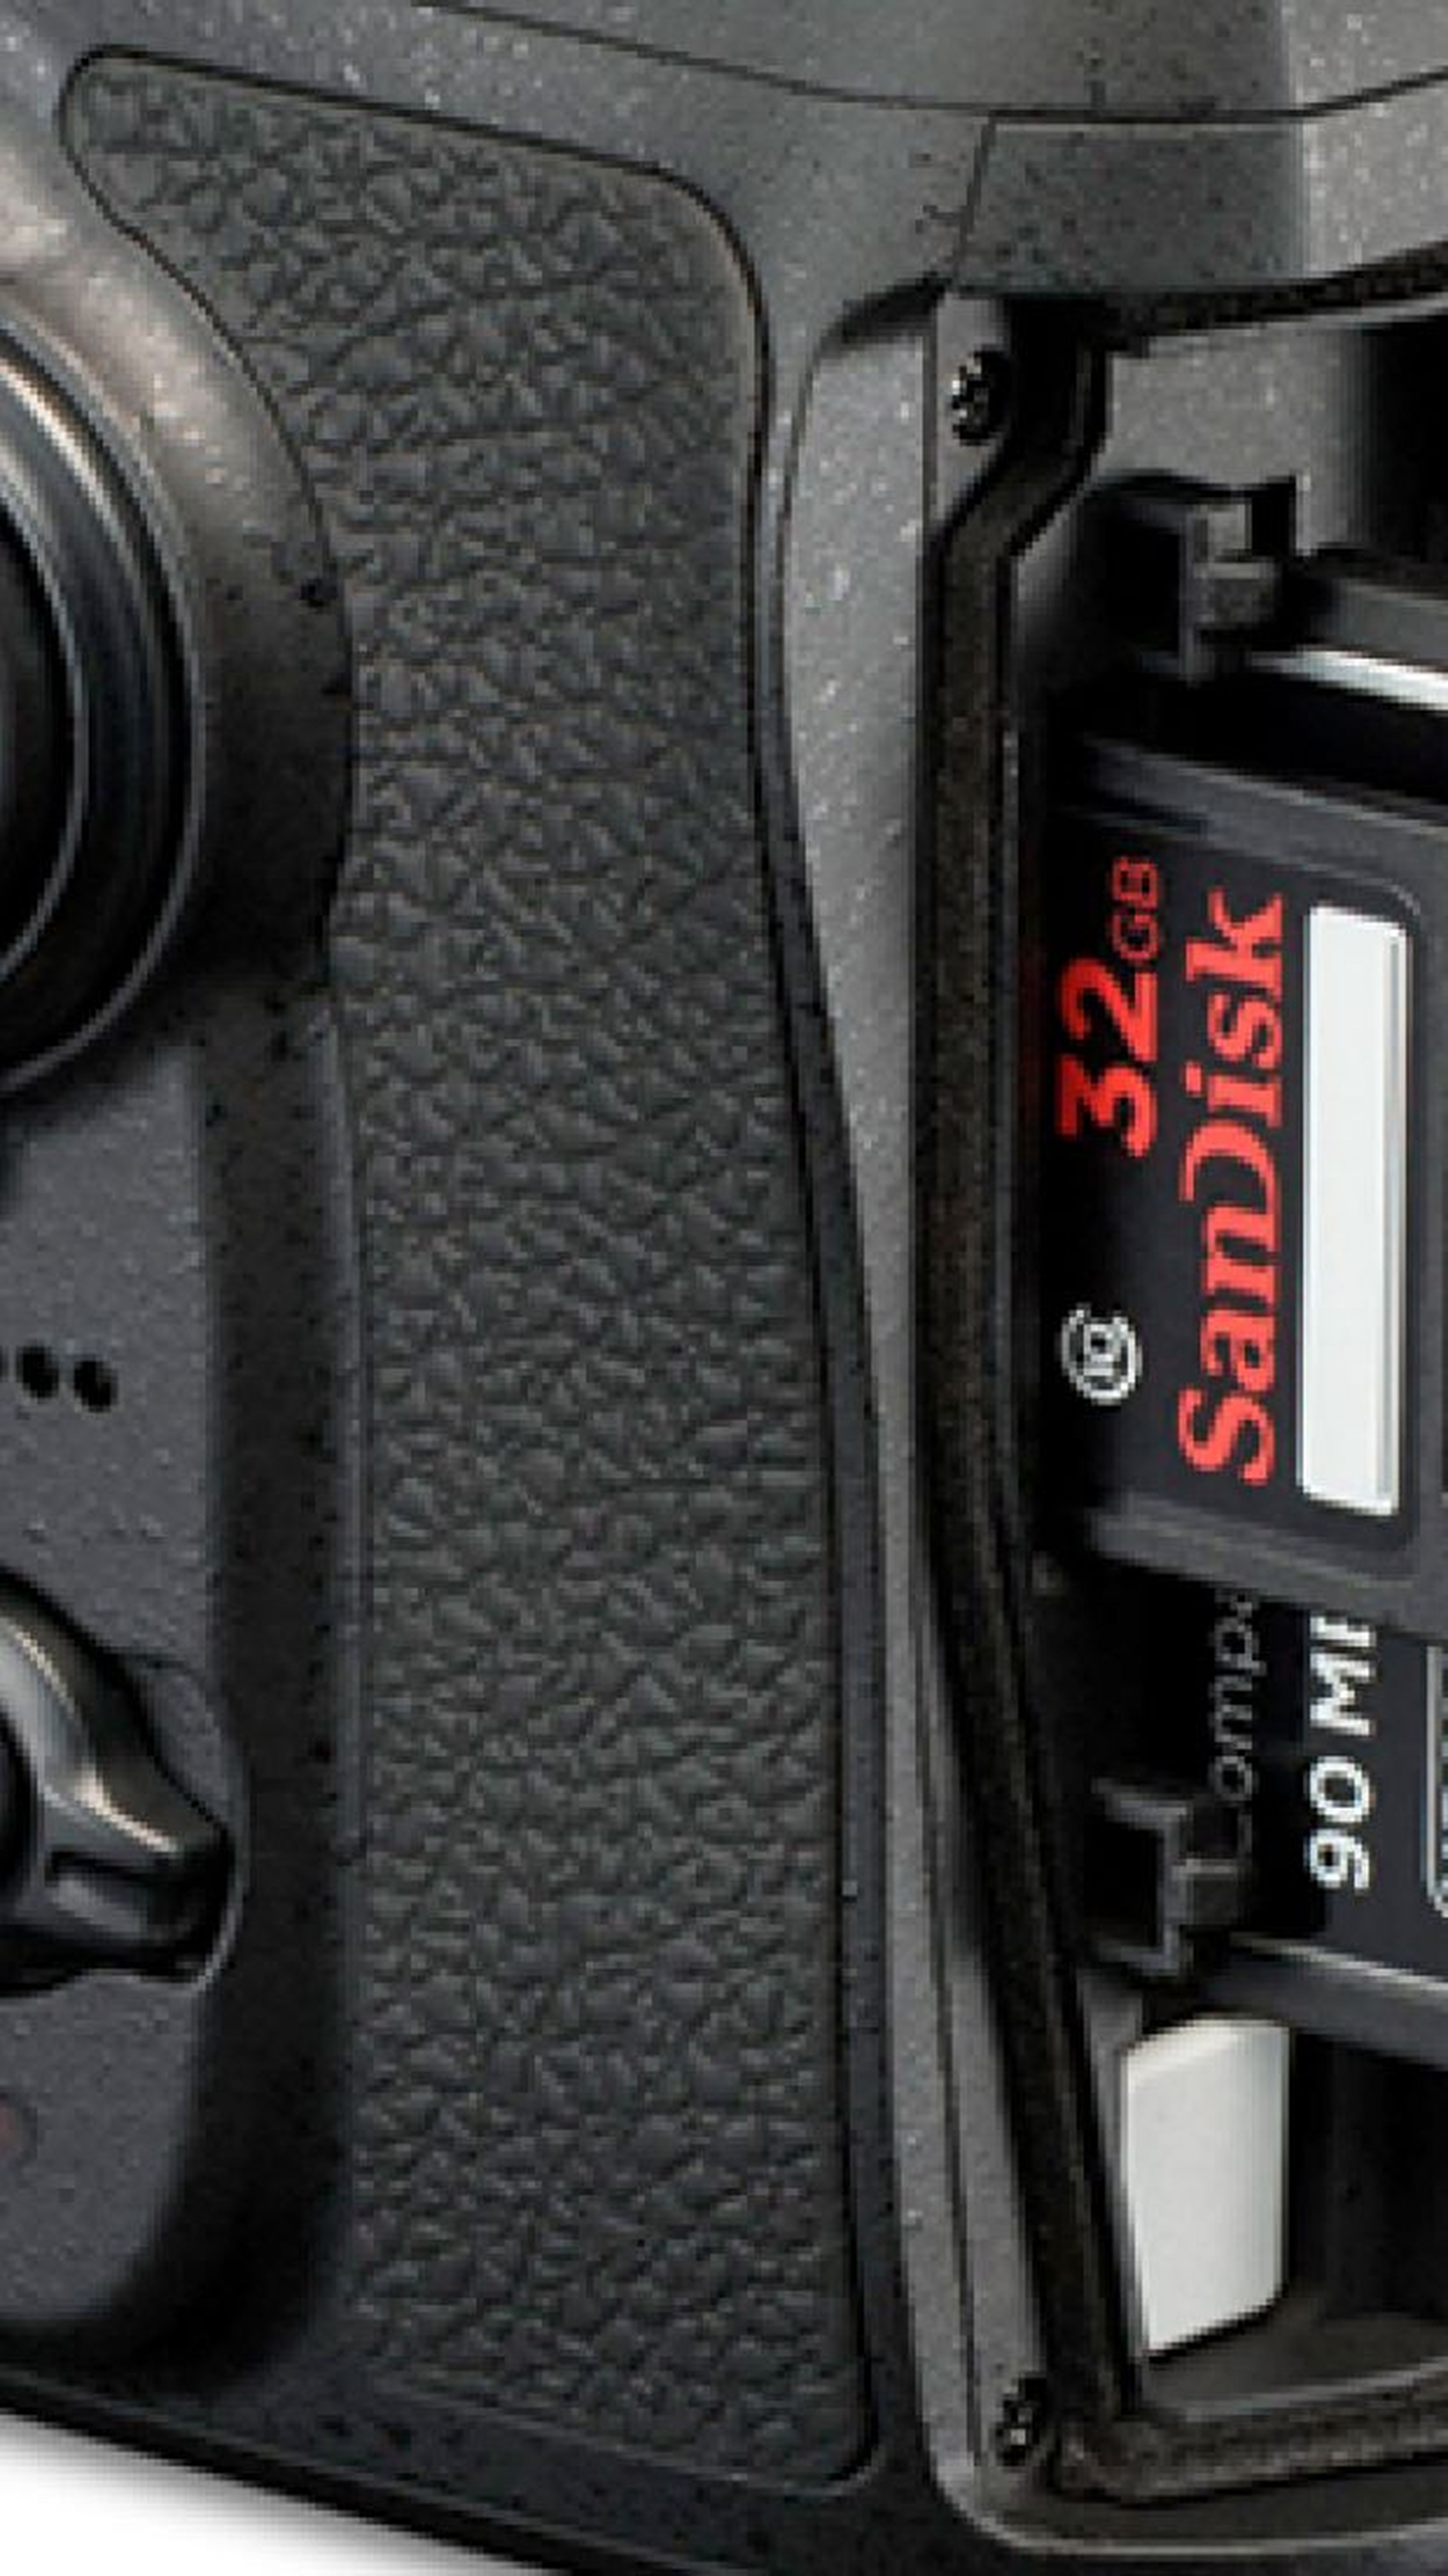 Las cámaras réflex de muy alta gama todavía utilizan tarjetas CompactFlash